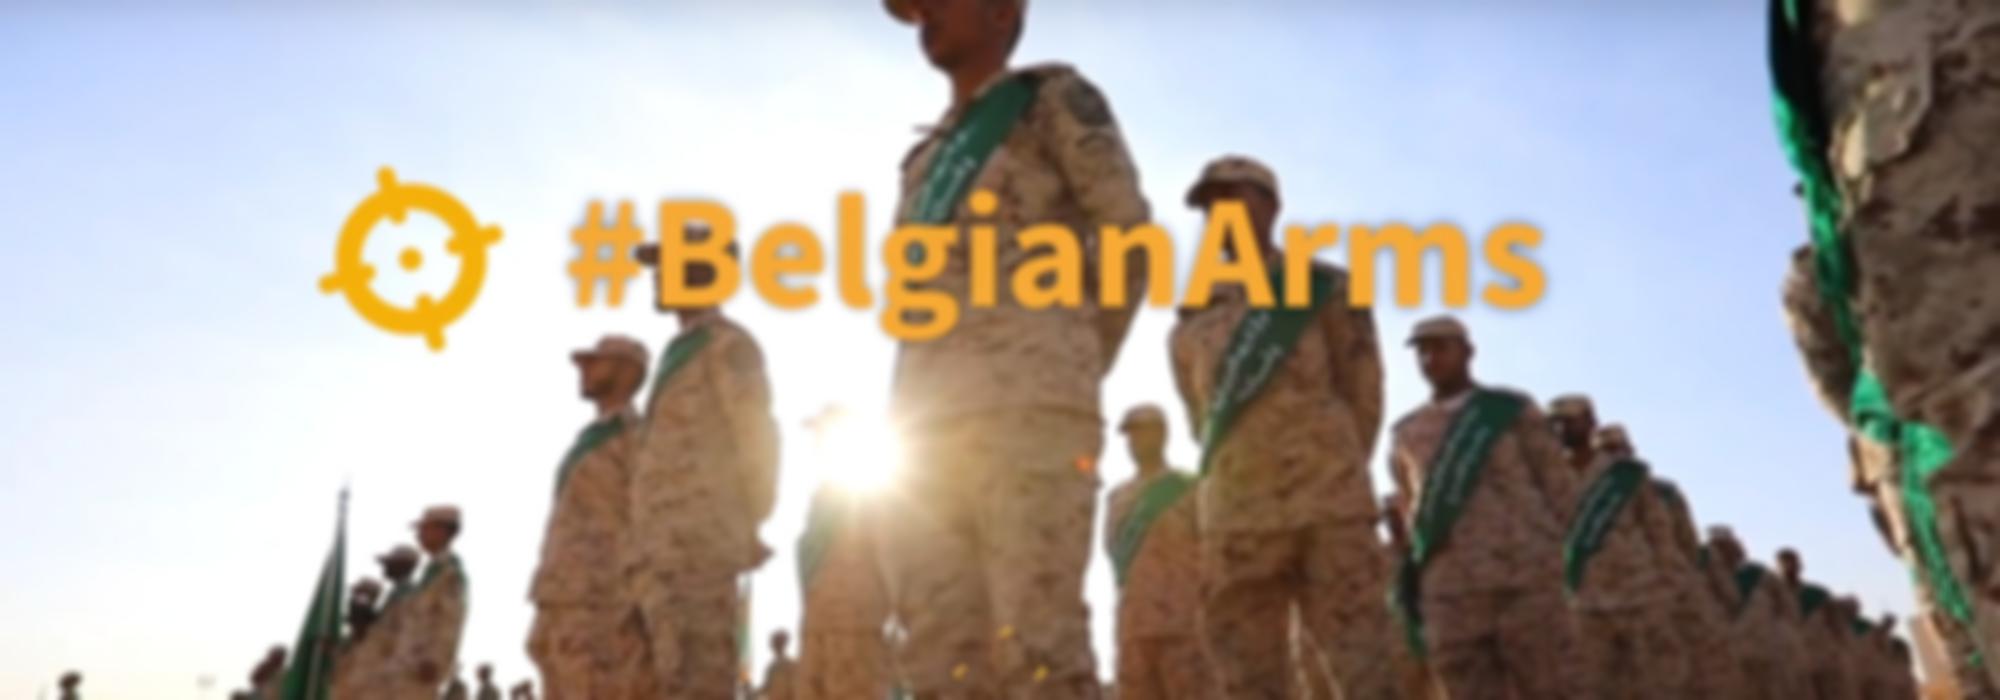 Belgian Arms screenshot